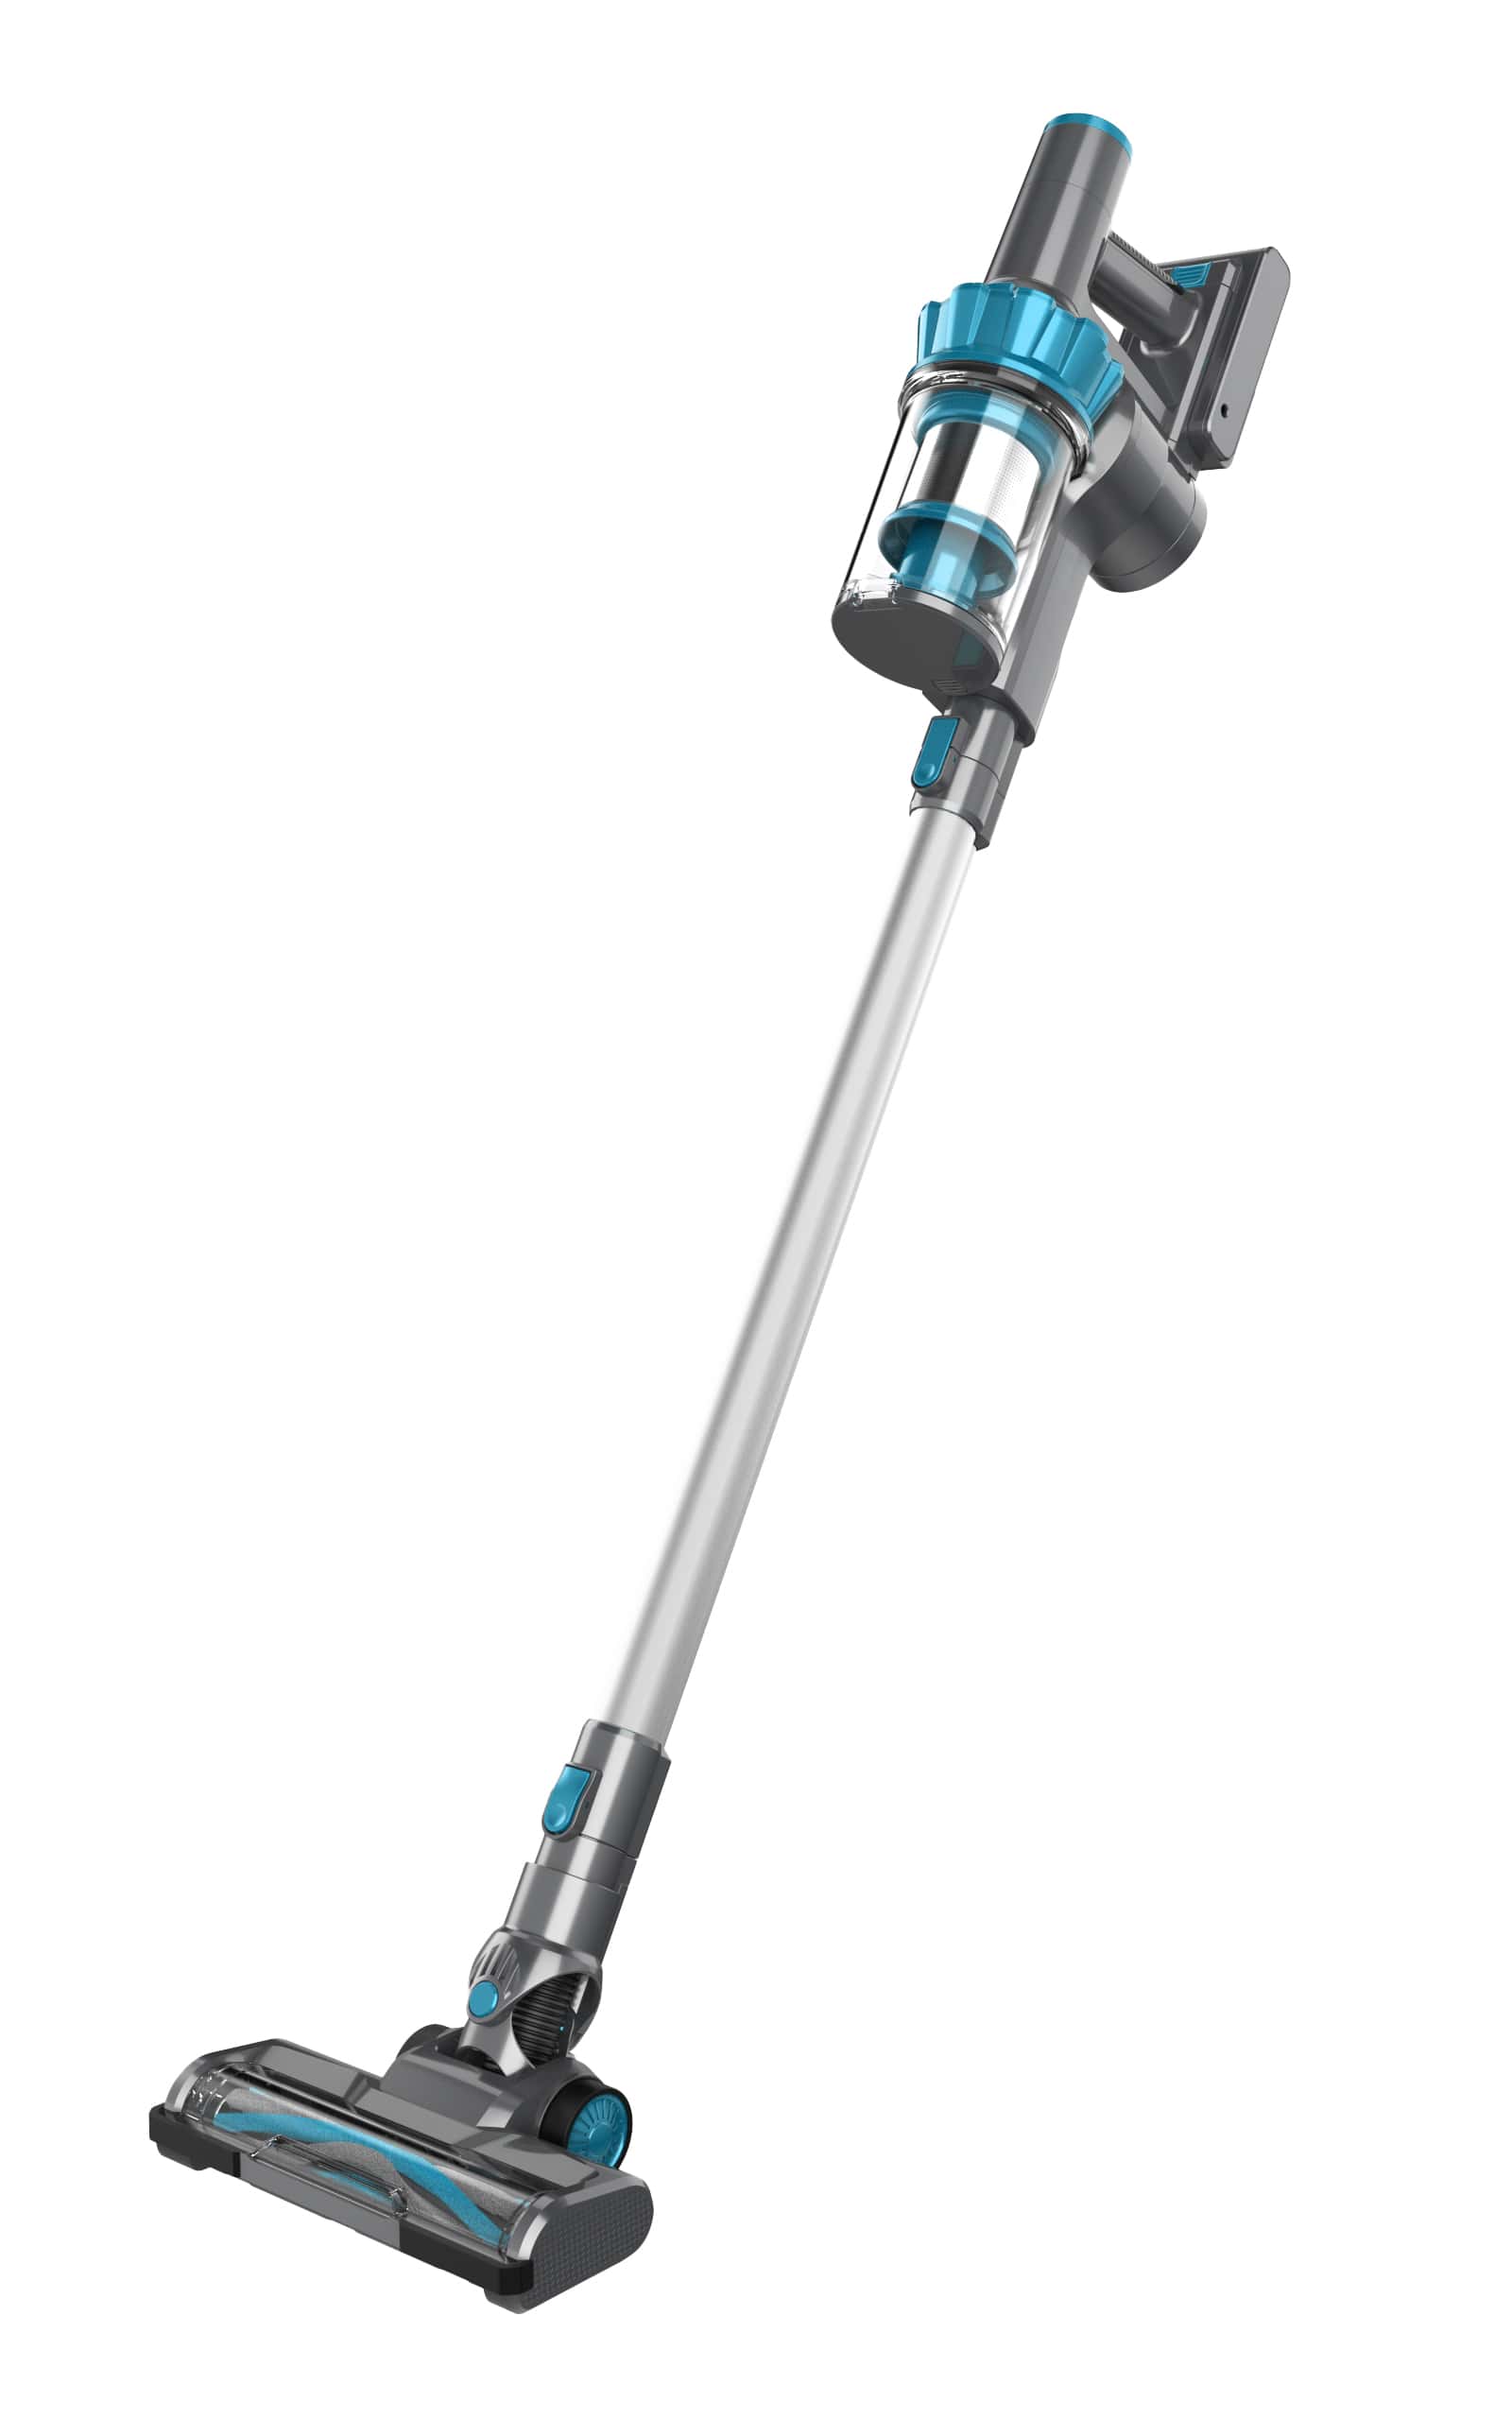 Cordless Vacuum Cleaner 130W, SKU: 2161